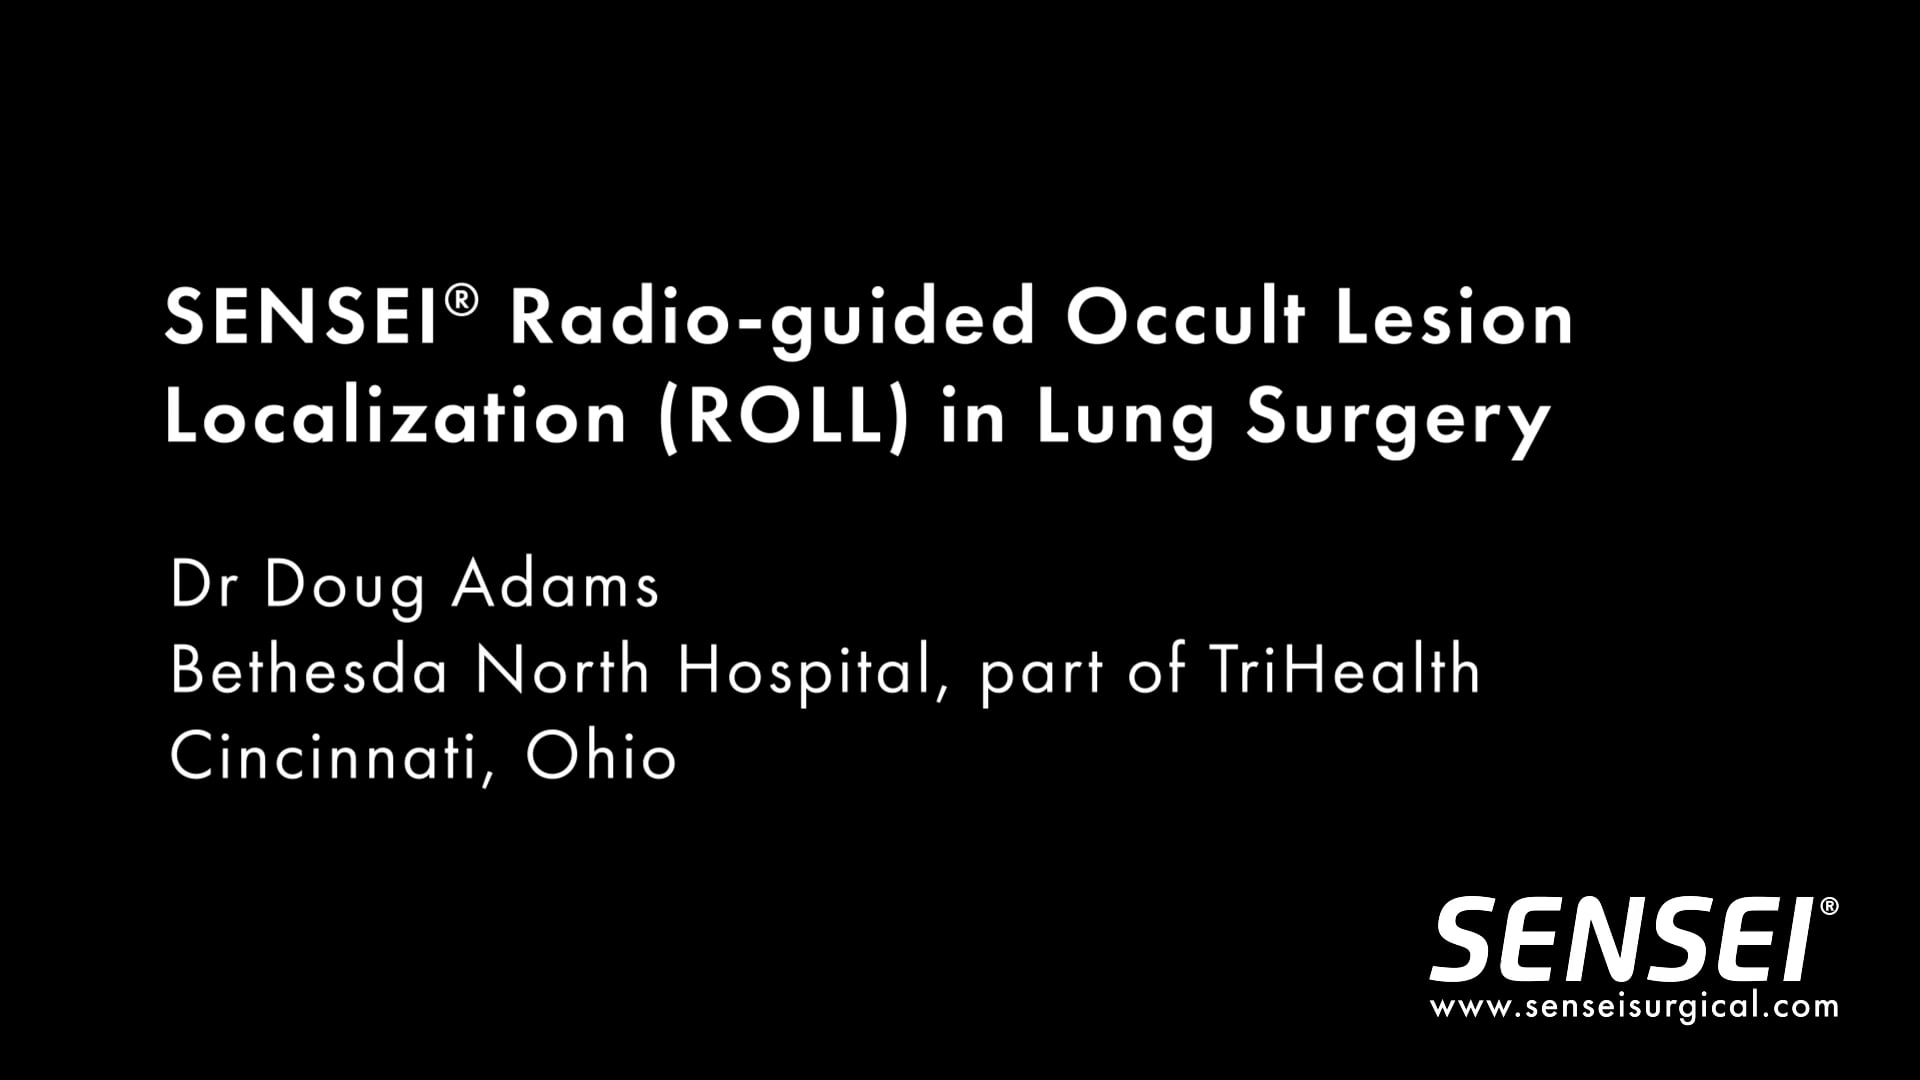 SENSEI ROLL Robotic Lung Surgery